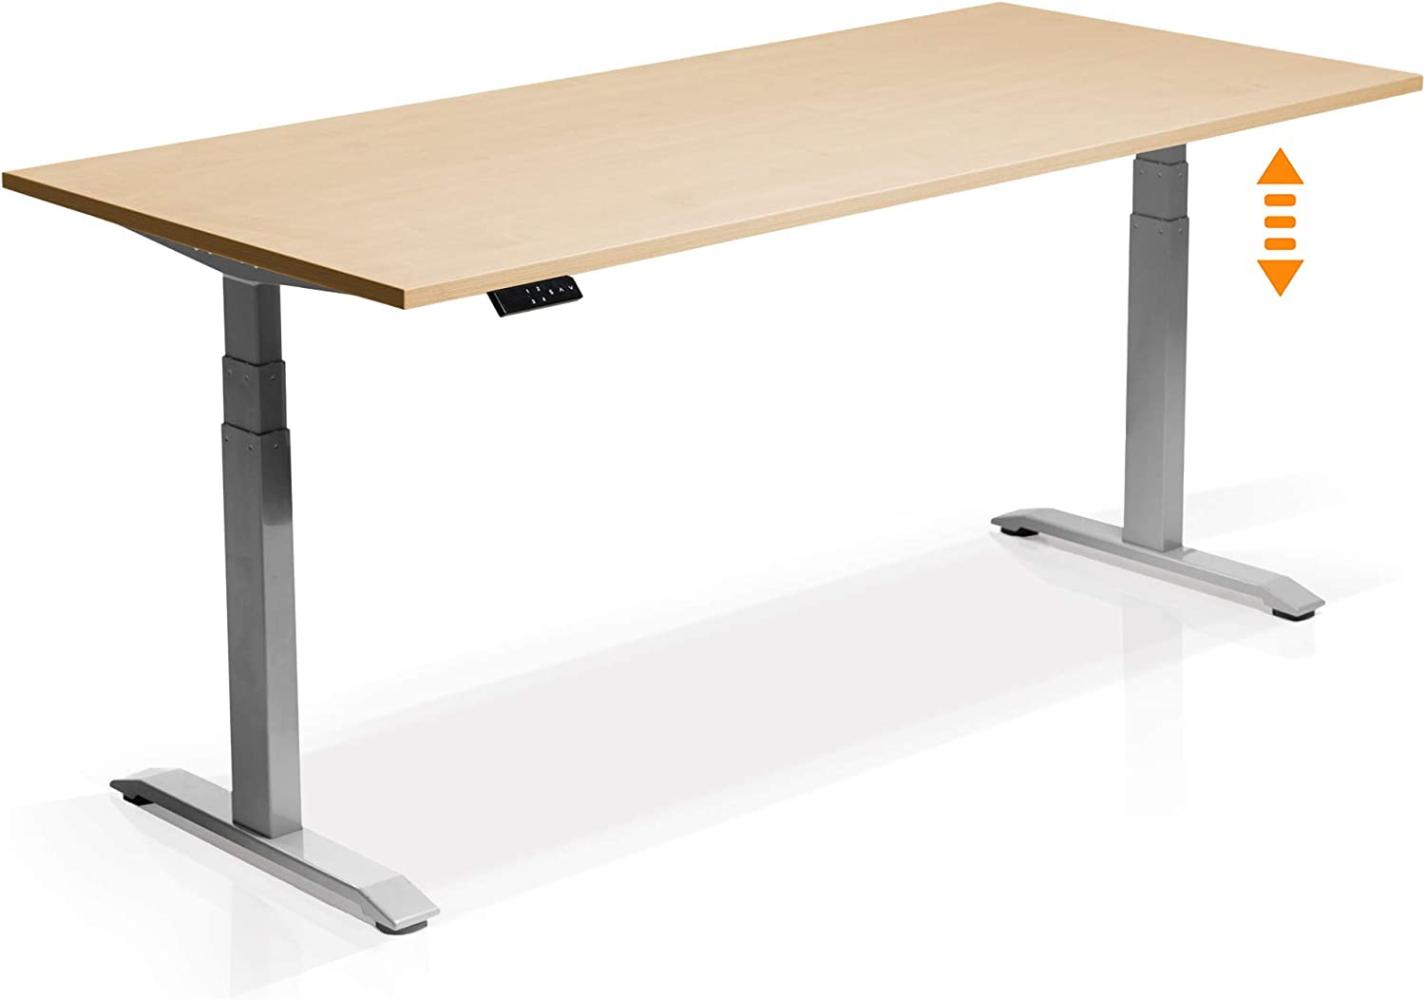 Möbel-Eins OFFICE ONE elektrisch höhenverstellbarer Schreibtisch / Stehtisch, Material Dekorspanplatte grau ahornfarbig 160 x 80 cm Bild 1